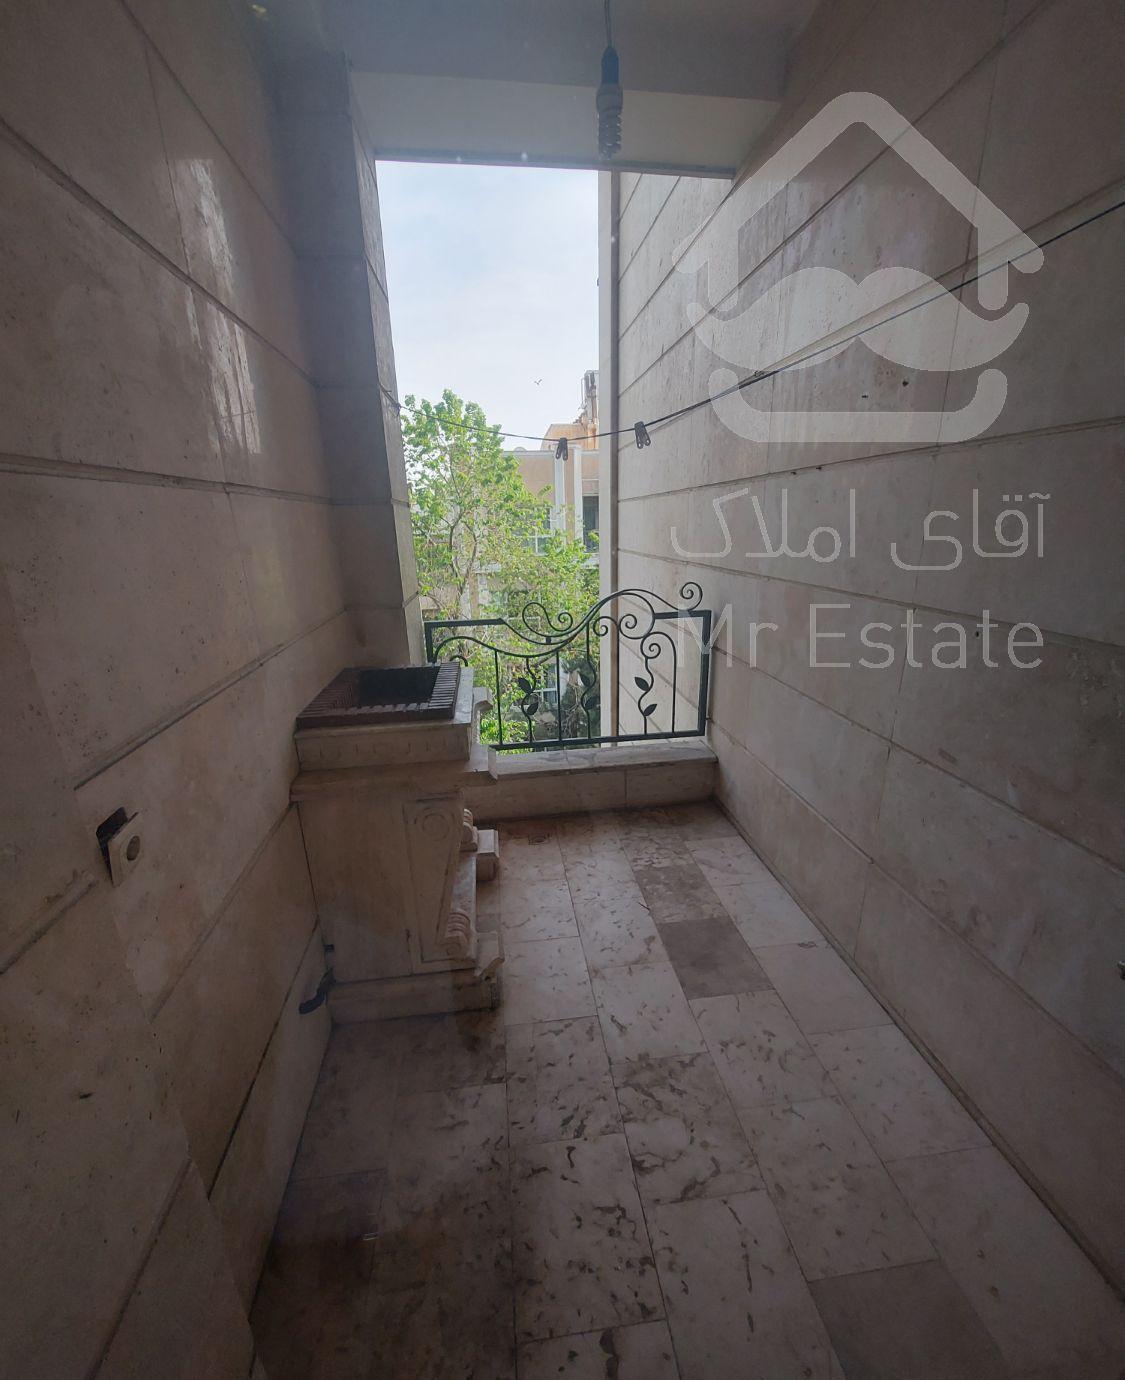 آپارتمان با اصالت ۲۸۰ متر محمودیه